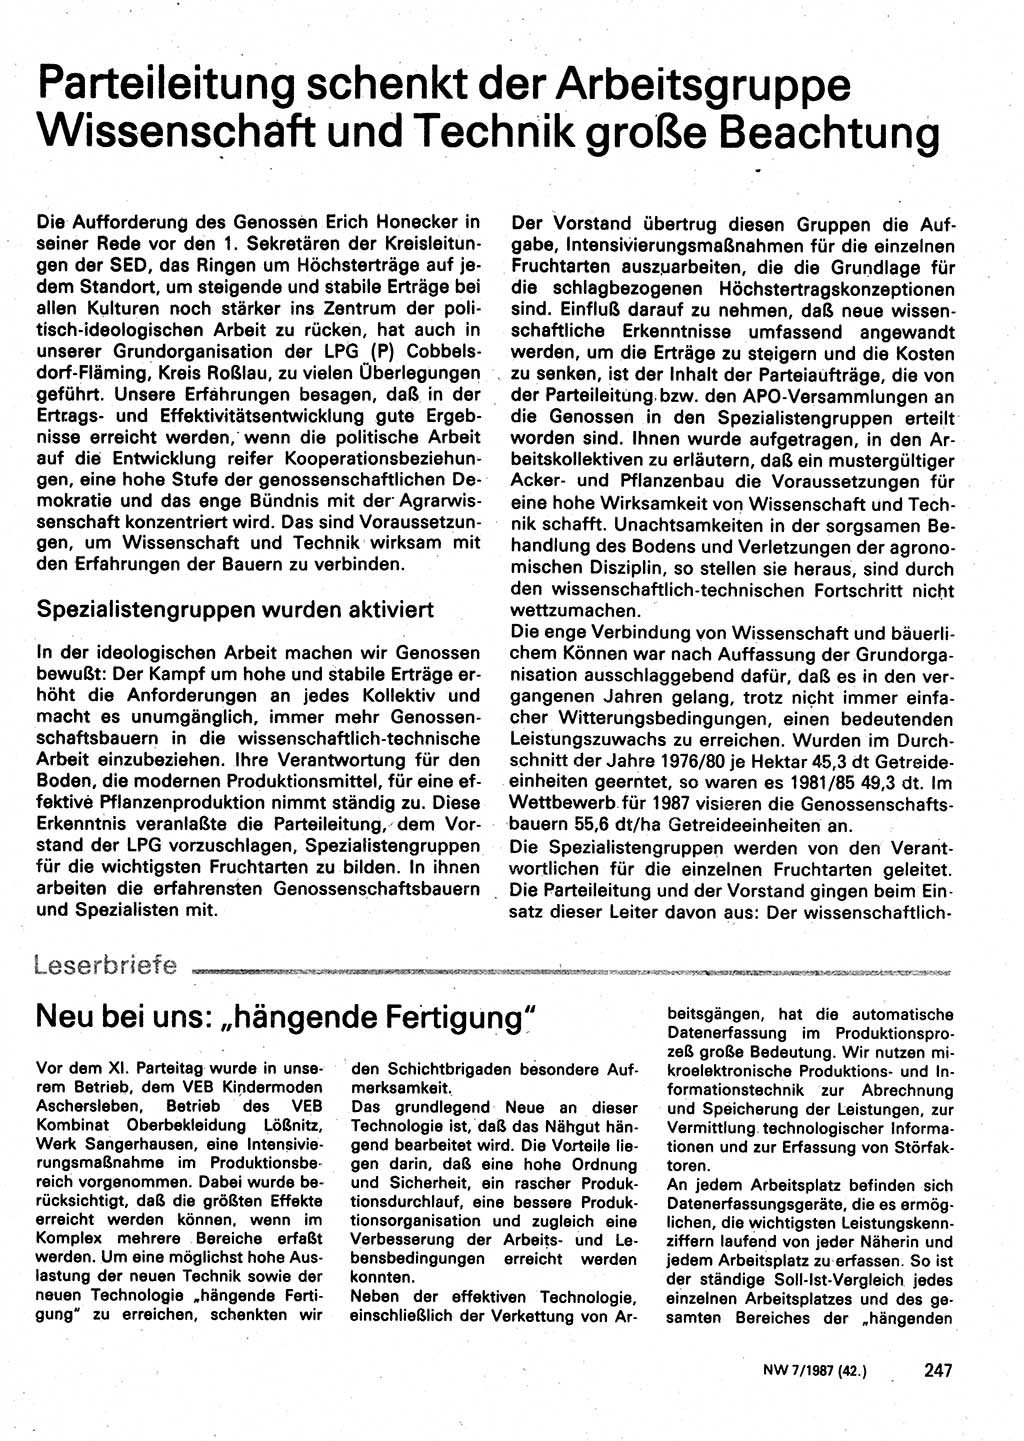 Neuer Weg (NW), Organ des Zentralkomitees (ZK) der SED (Sozialistische Einheitspartei Deutschlands) für Fragen des Parteilebens, 42. Jahrgang [Deutsche Demokratische Republik (DDR)] 1987, Seite 247 (NW ZK SED DDR 1987, S. 247)